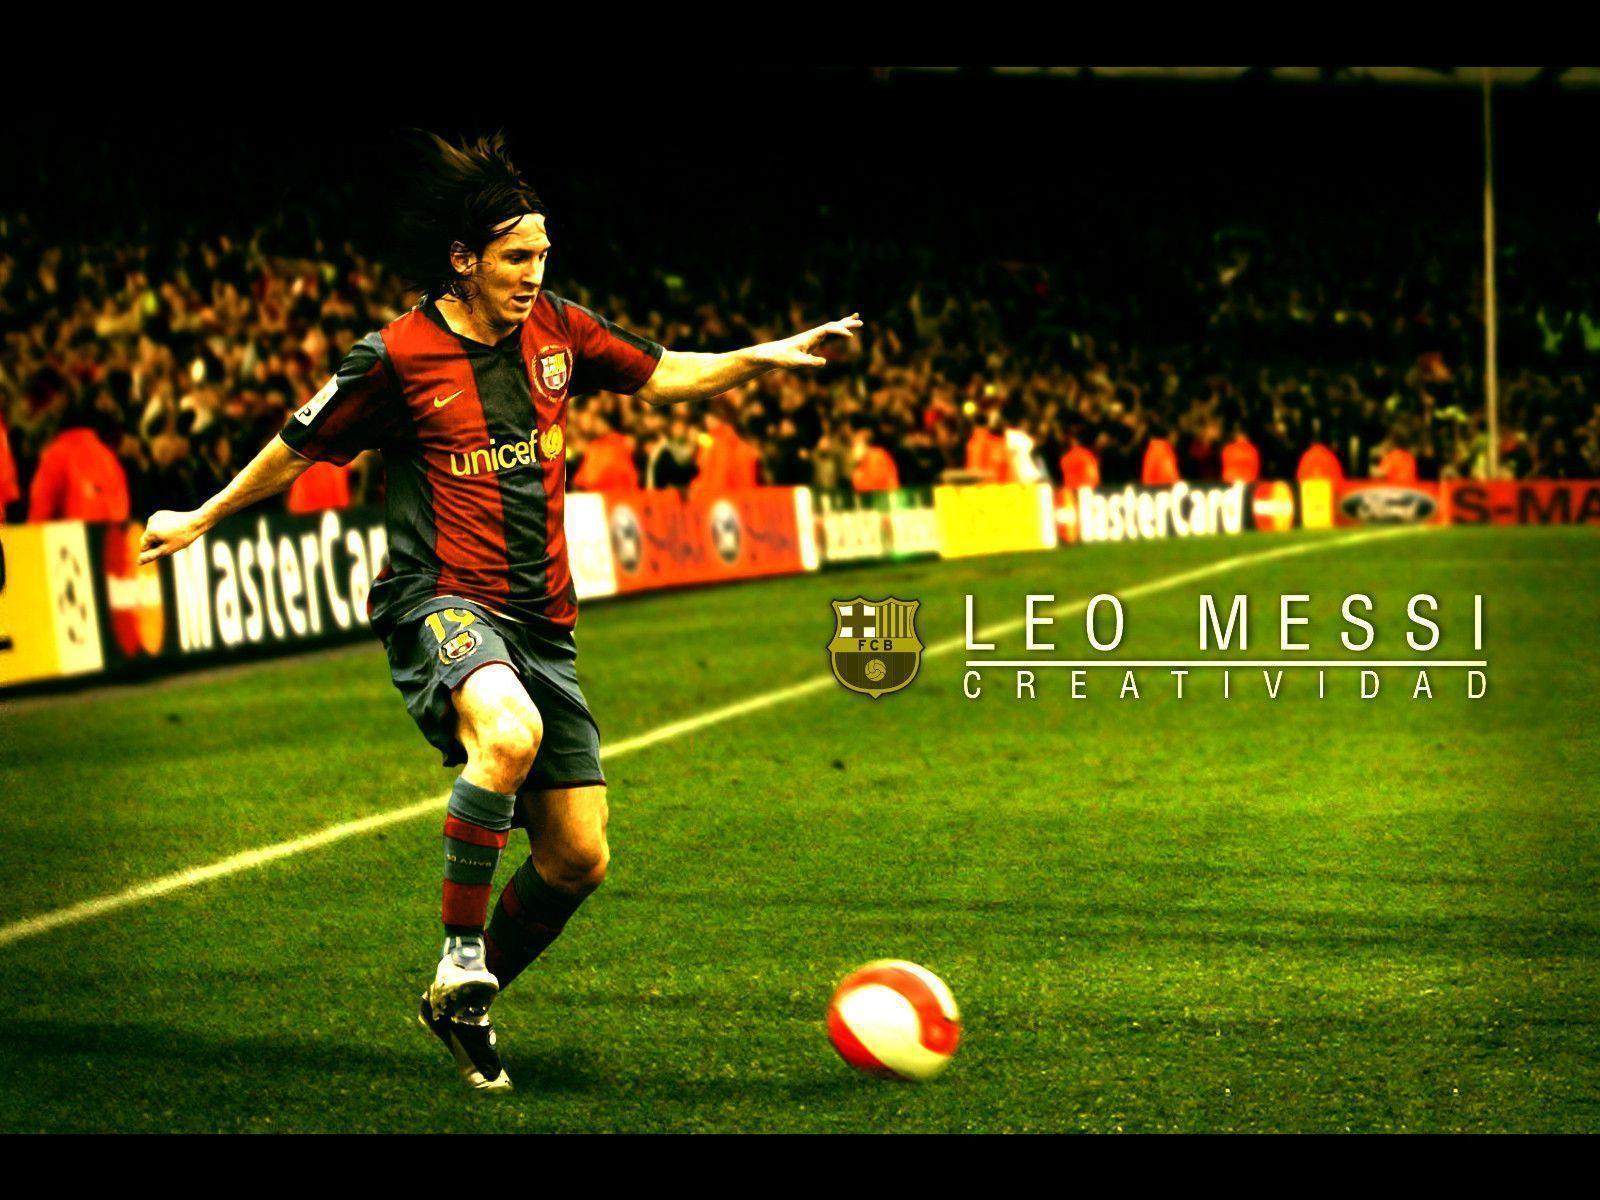 Lionel Messi Wallpaper 2015 Free Desk HD Wallpaper. amagico